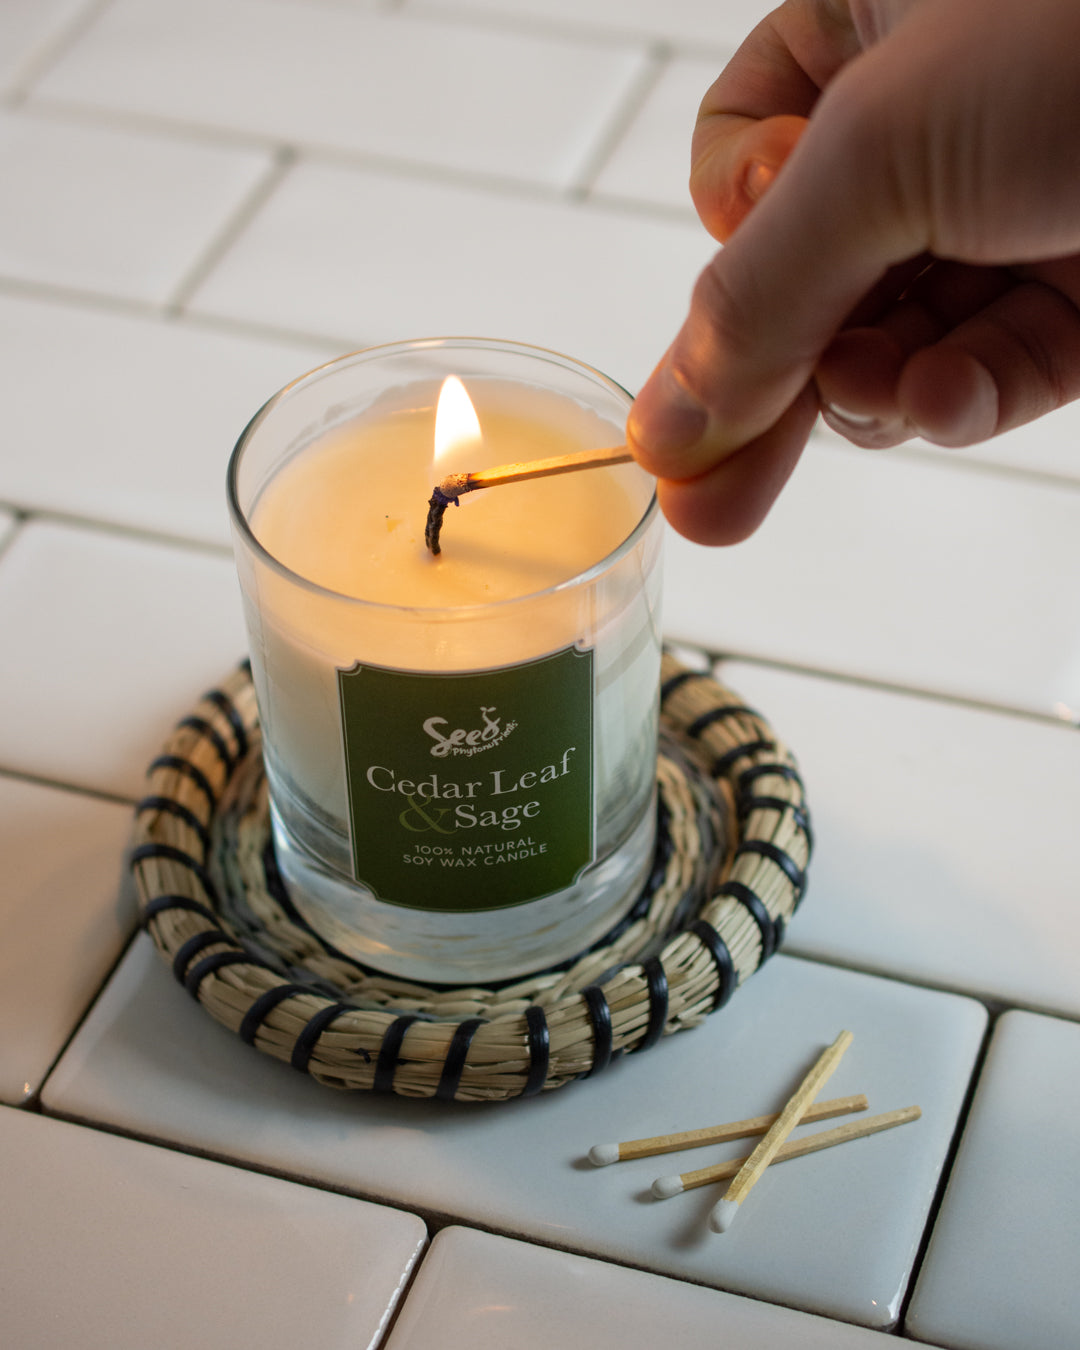 Cedar Leaf and Sage Soy Wax Candle